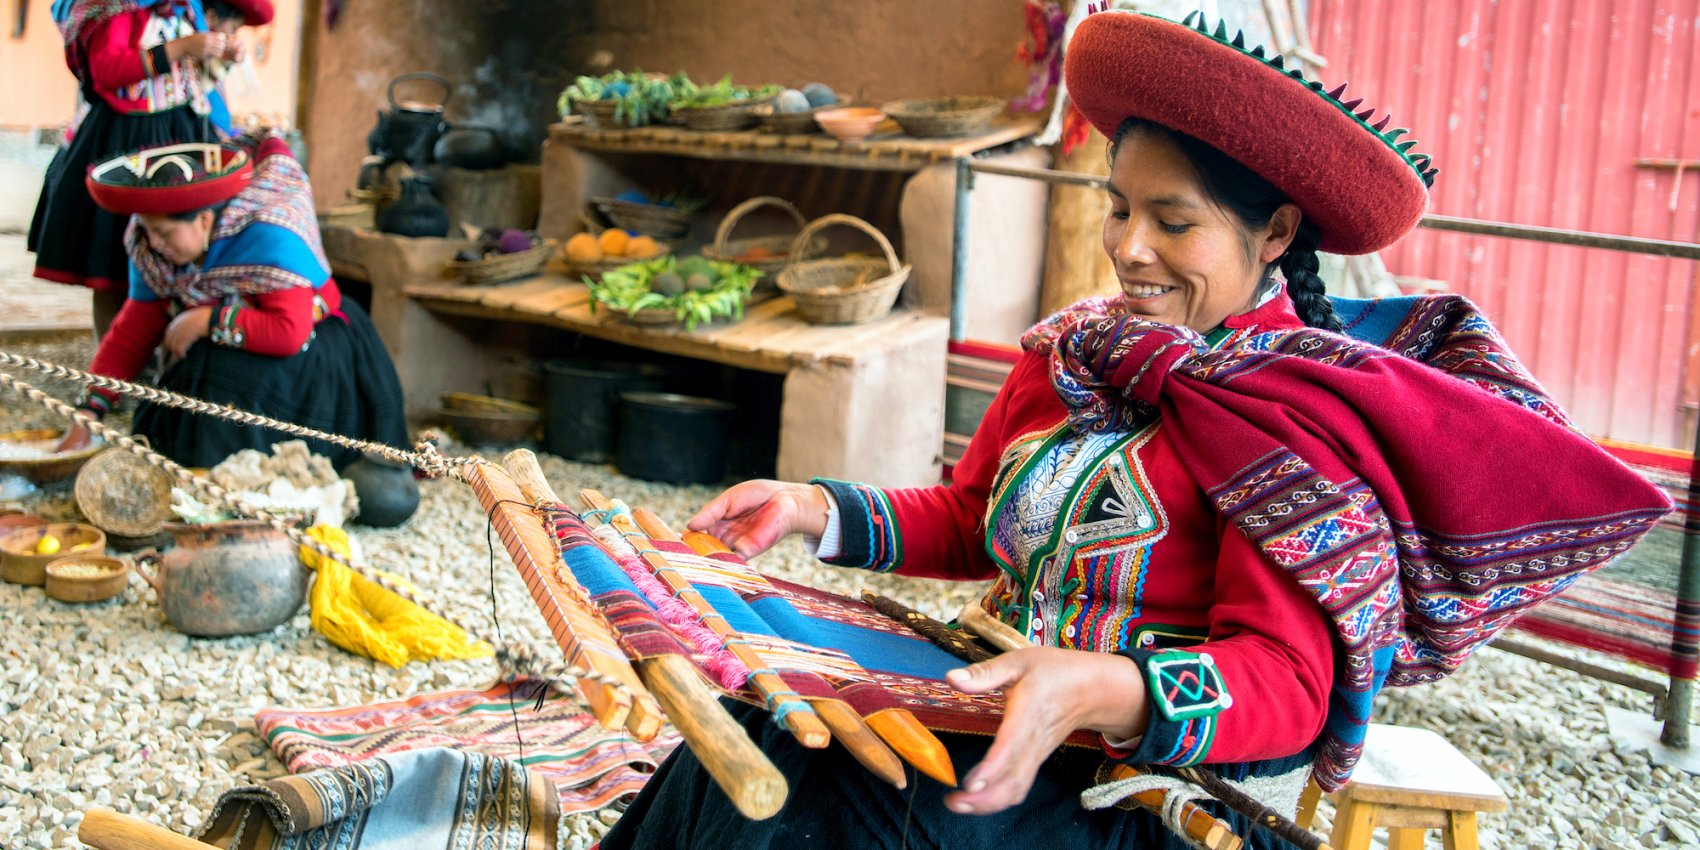 A woman in Ecuador hand sinning wool at an art market.